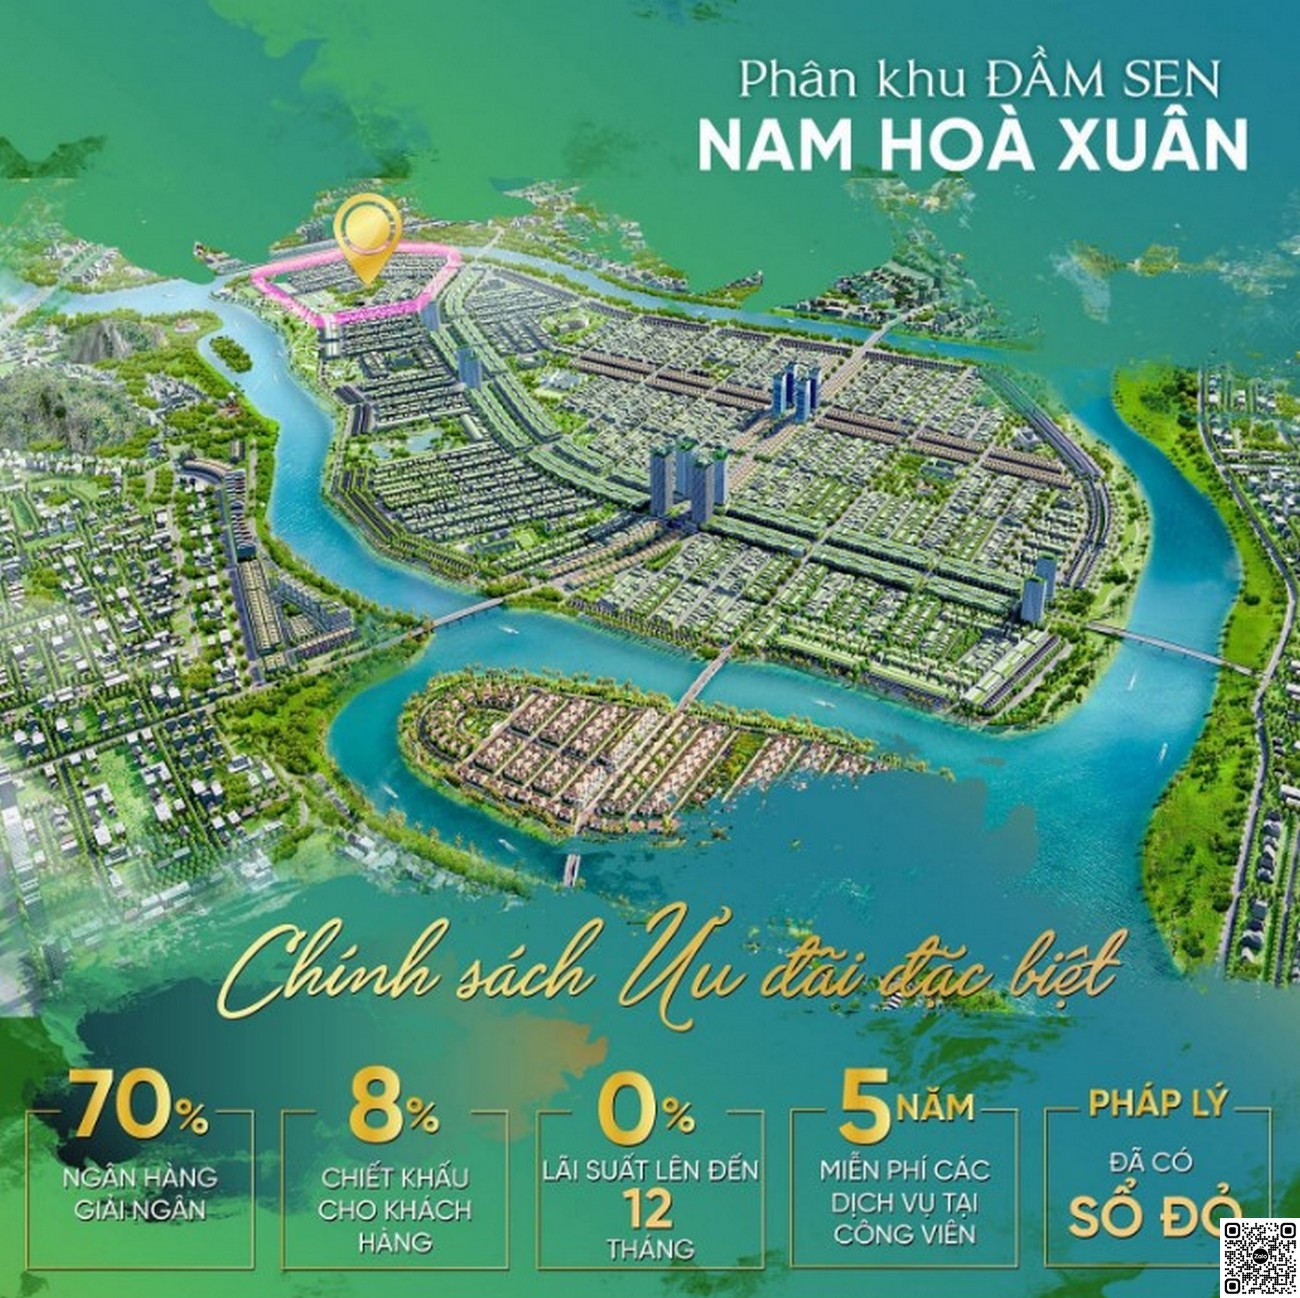 Chính sách thanh toán dự án Sun Riverpolis Đà Nẵng